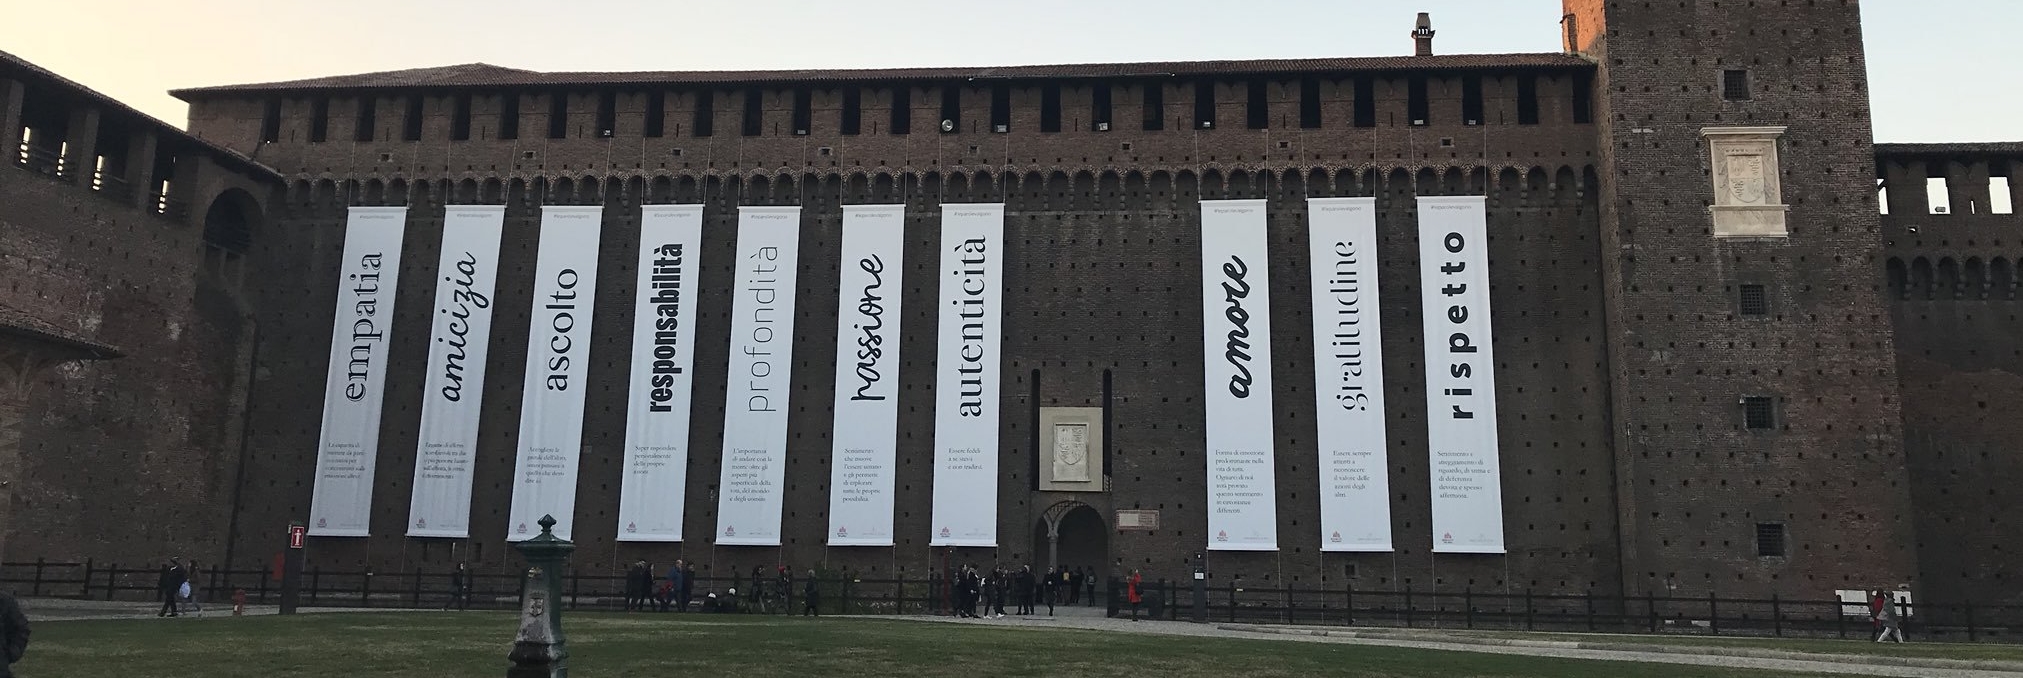 Una campagna crossmediale in difesa della lingua italiana